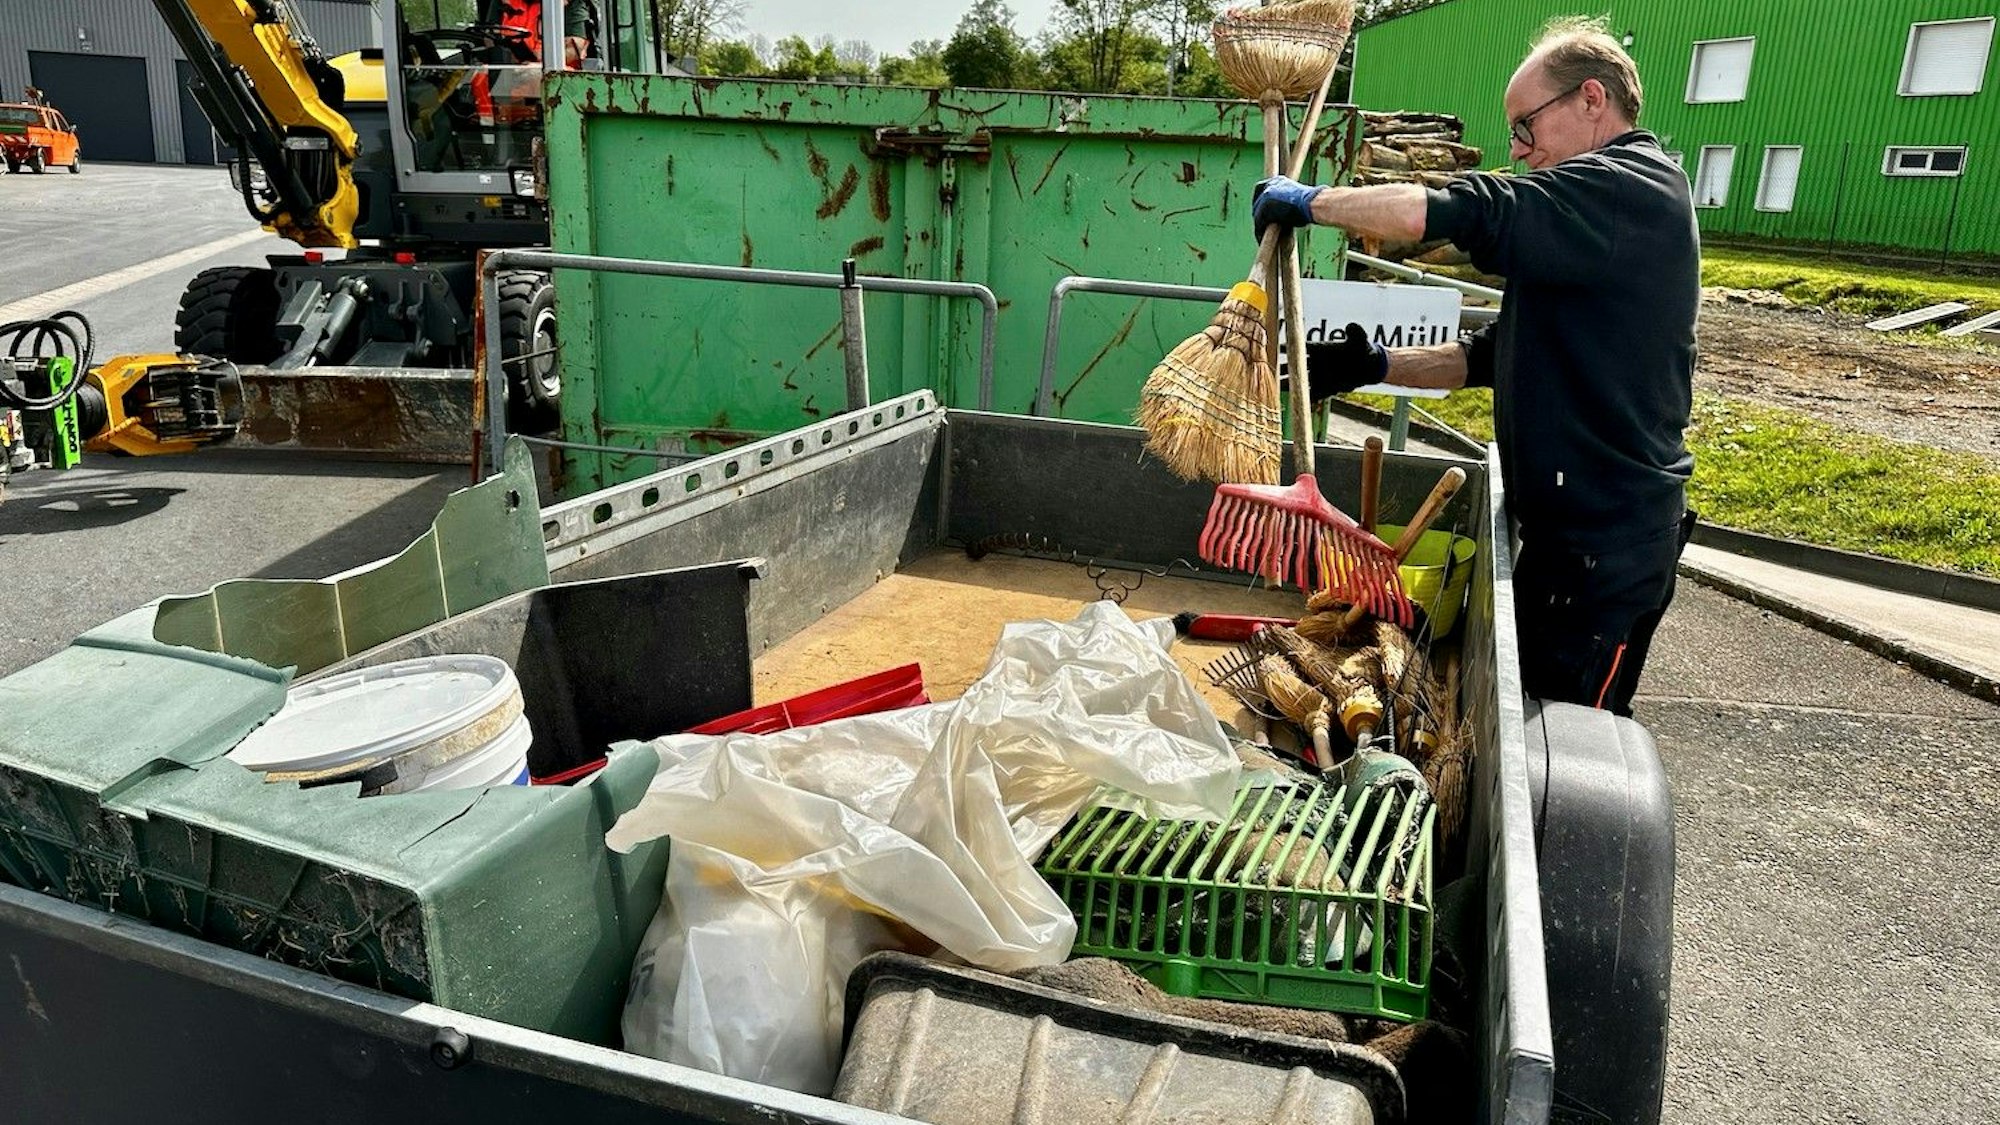 Hennef schwingt den Besen

Mit einem Anhänger lieferten die Sammler vom Reiterhof Allnerhof den Müll ab